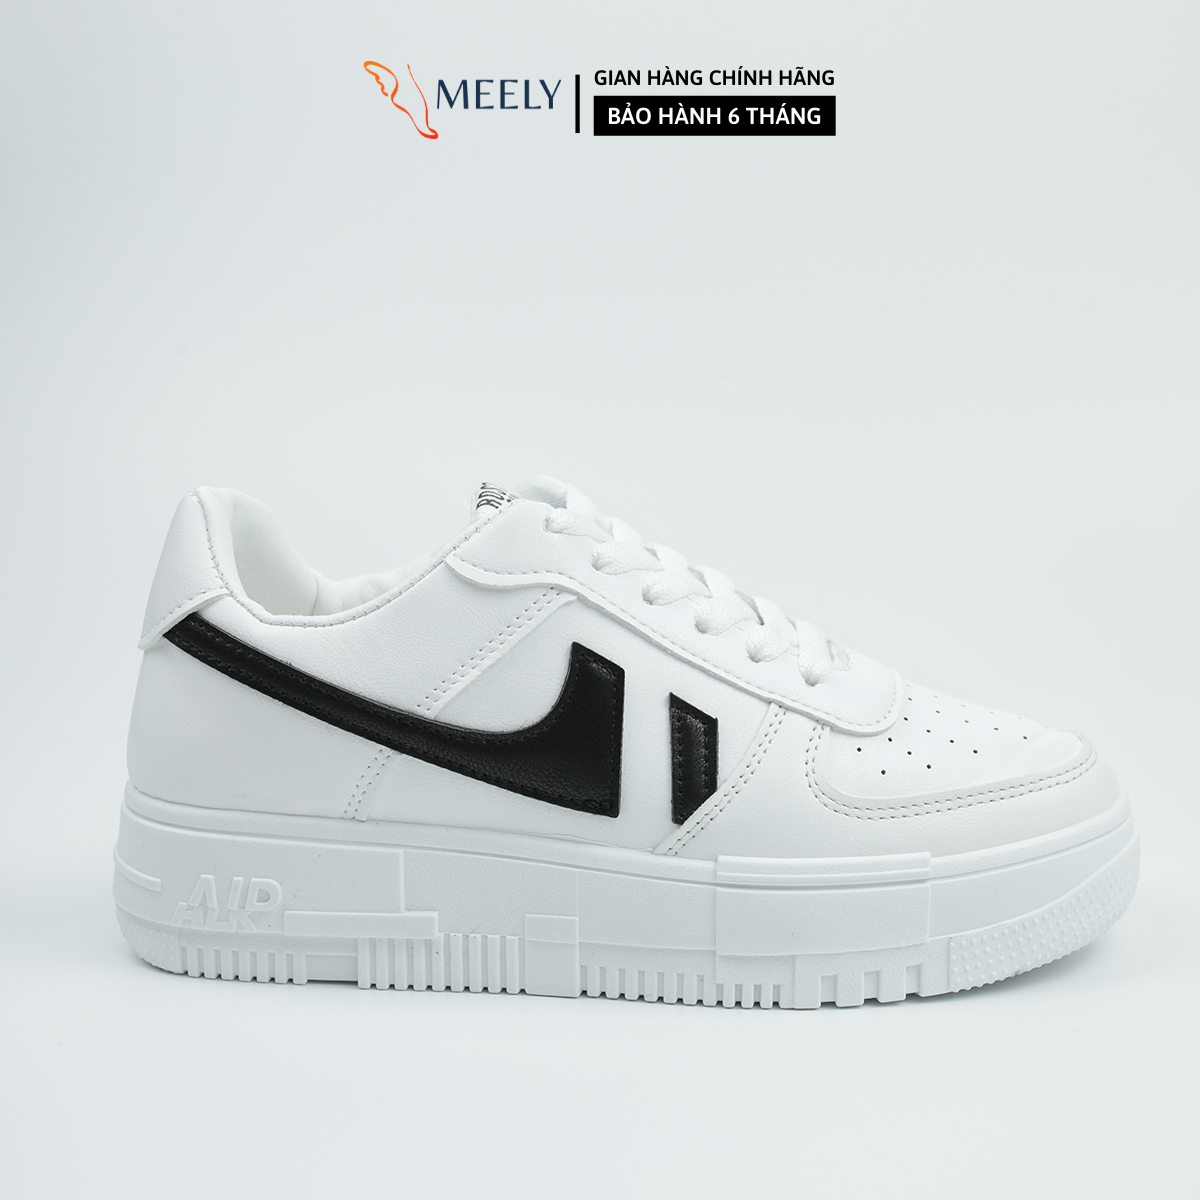 MEELY - Giày Thể Thao Nữ Sneaker Fashion Năng Động - AF56